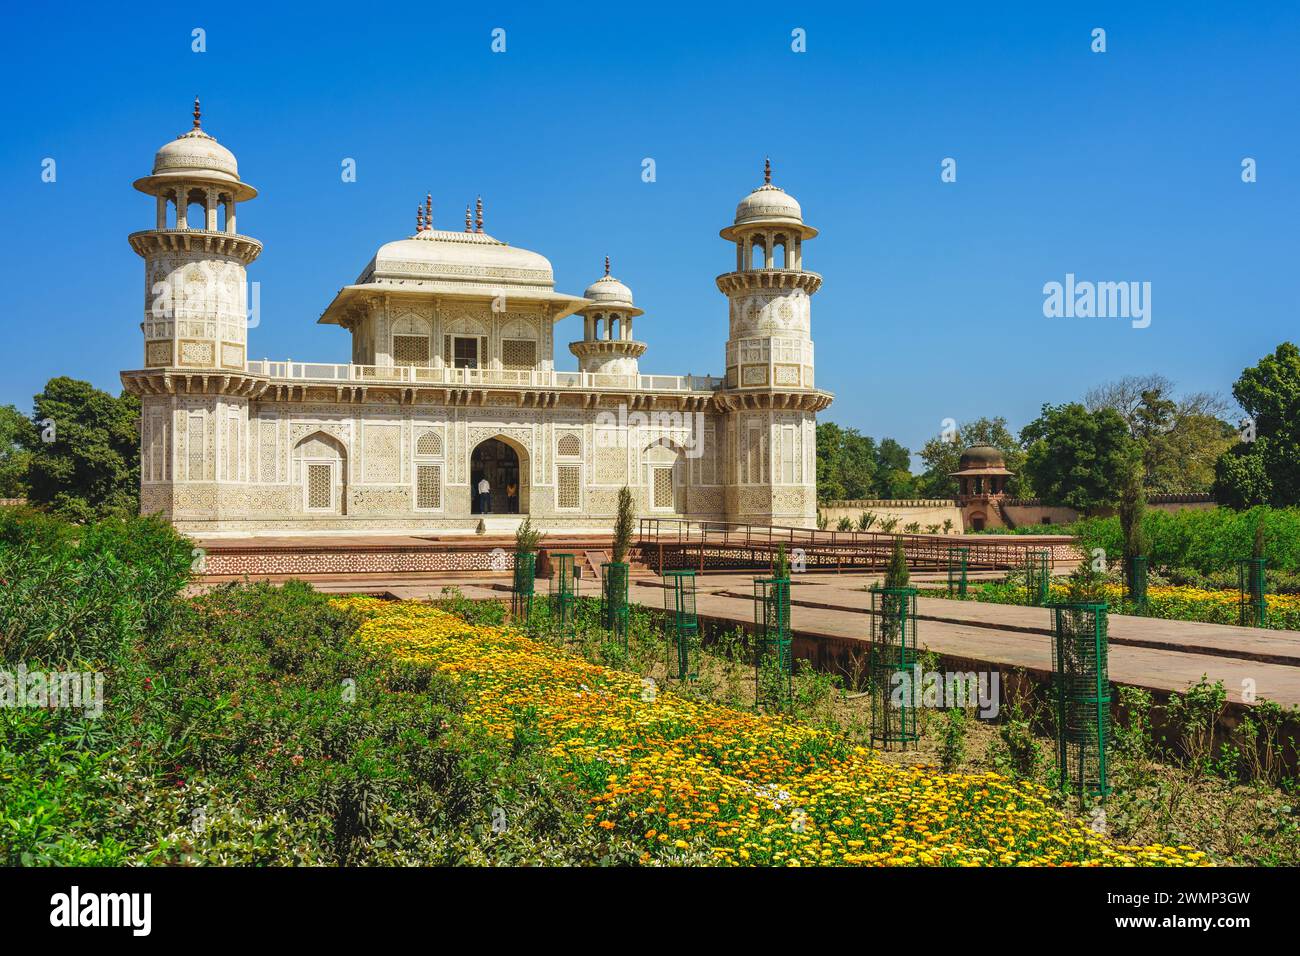 Tomb of Itimad ud Daulah, aka Baby Taj, located in agra, india Stock Photo